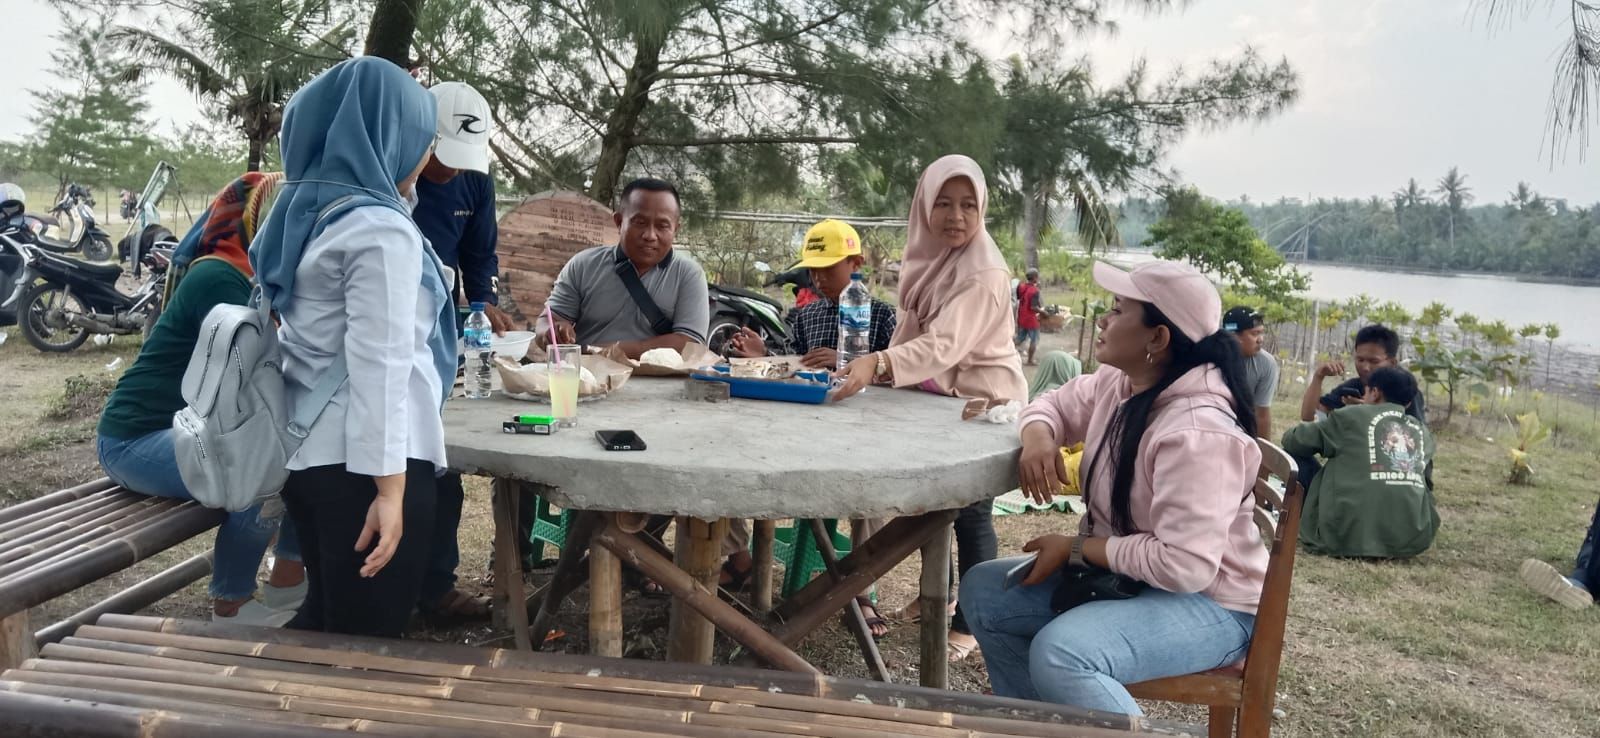 Pengunjung dari Tasikmalaya dan Pangandaran sedang makan bersama saat munggahan di tempat wisata Tanjung Cemara Kabupaten Pangandaran.*